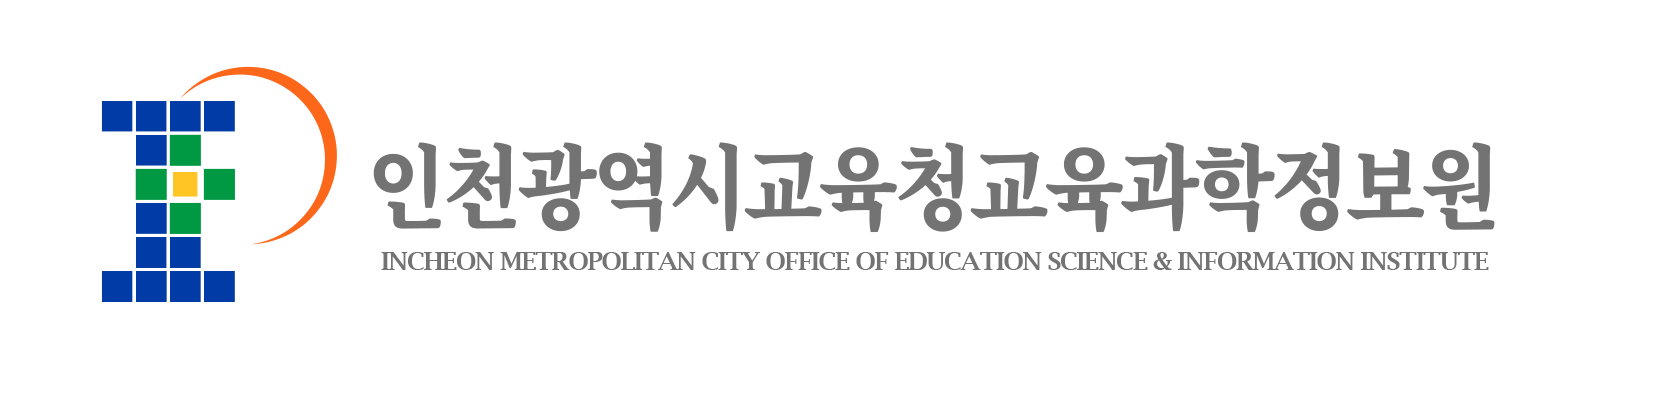 인천광역시교육청교육과학연구원의 시그니처